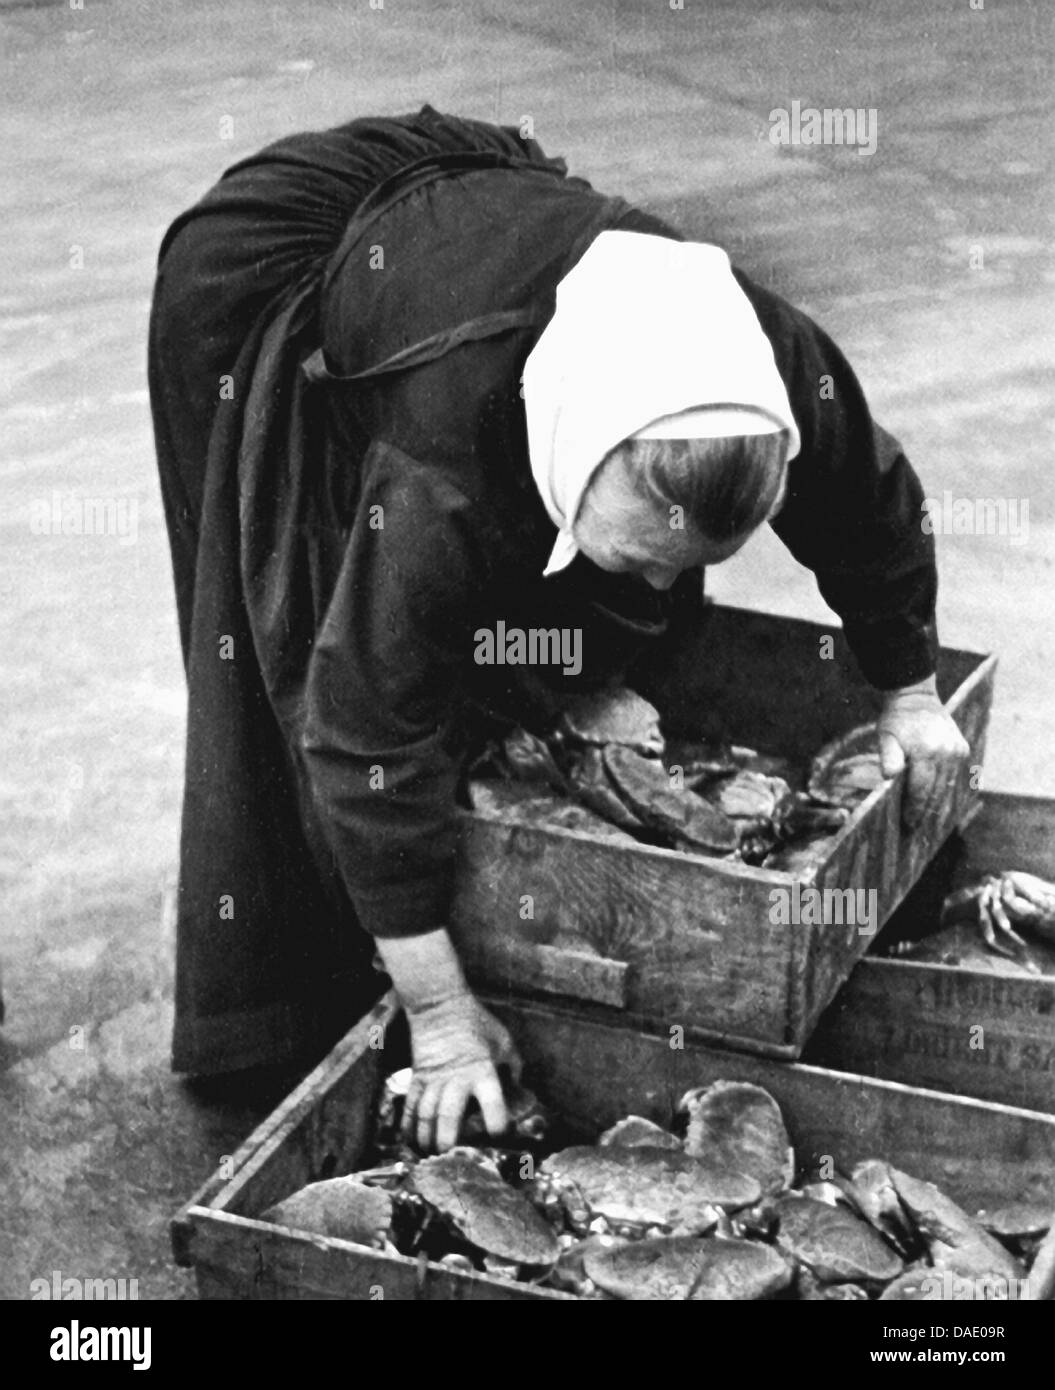 Francia 1934, Donna della scatola di contenimento con granchi. Immagine dal fotografo Fred Stein (1909-1967) che emigrarono 1933 dalla Germania nazista per la Francia e infine negli Stati Uniti. Foto Stock